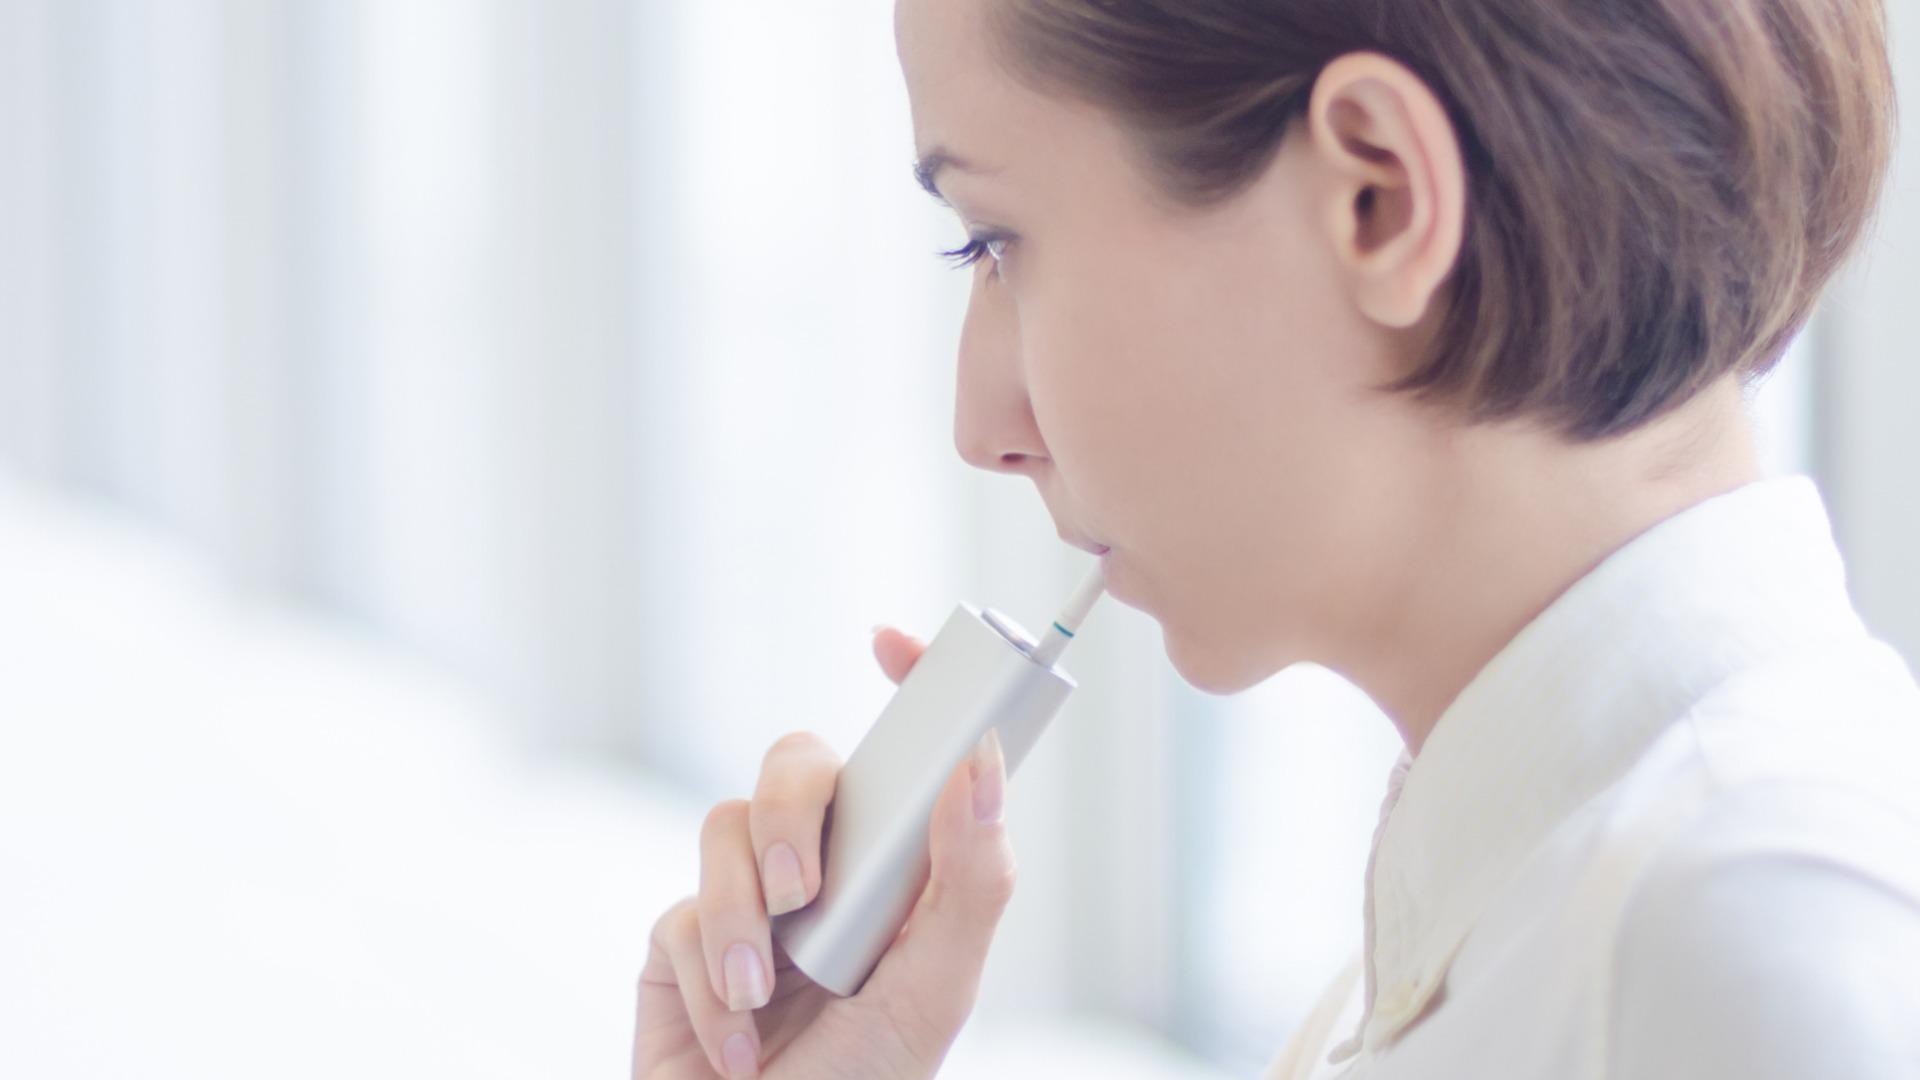 欧州呼吸器学会が「加熱式タバコ」に声明、いったい何が問題なのだろうか（石田雅彦） - エキスパート - Yahoo!ニュース